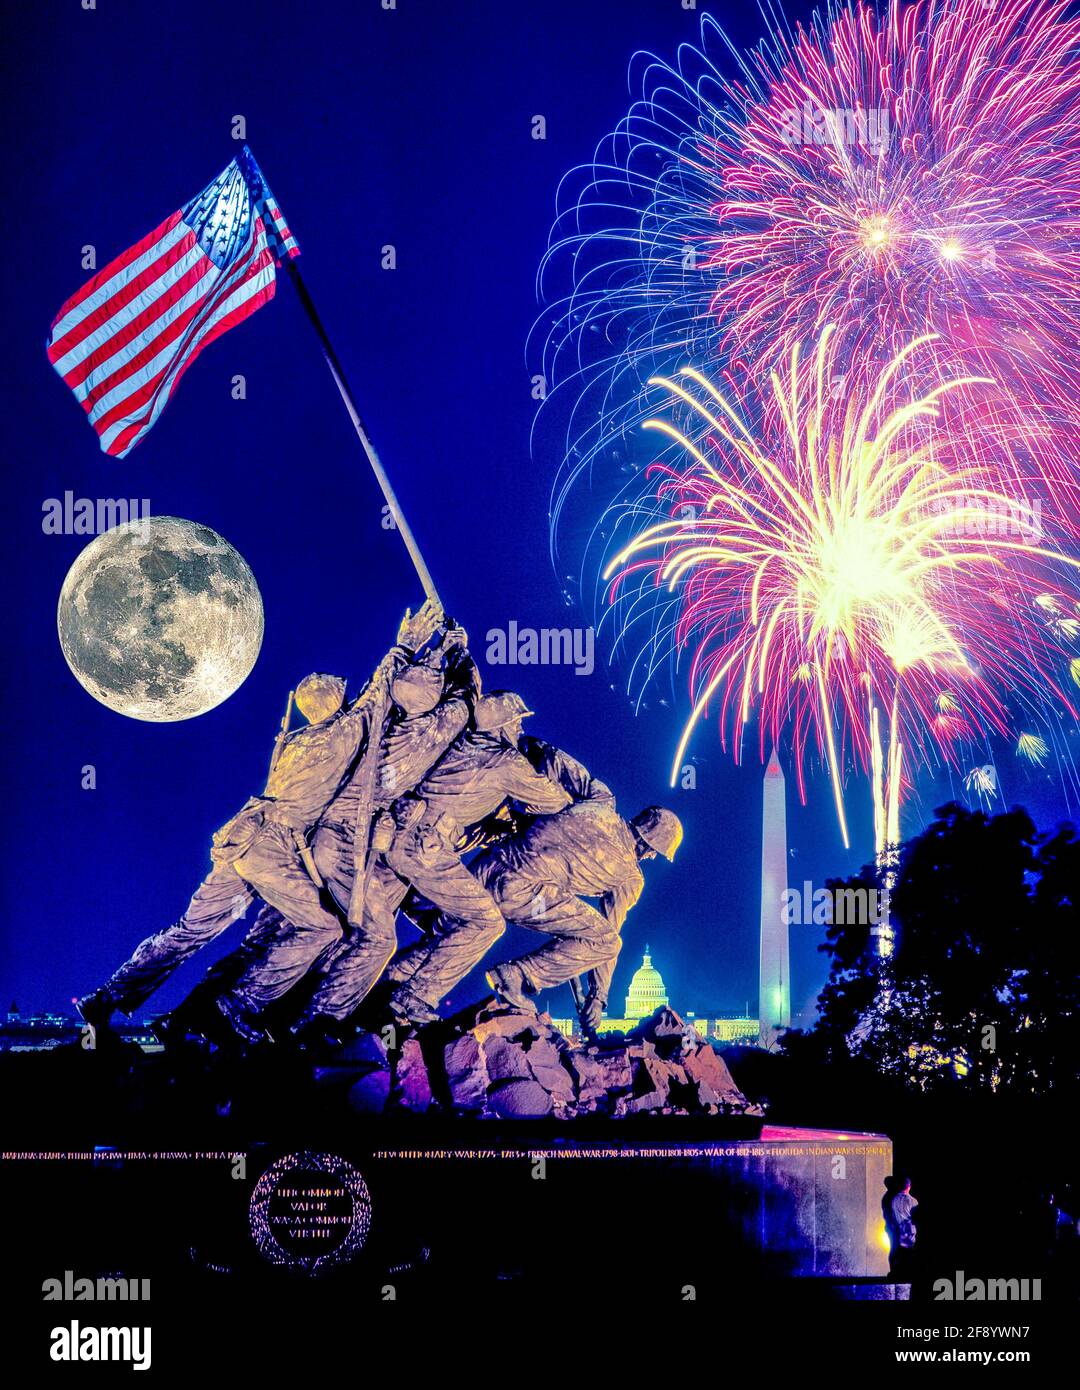 El cuarto de julio fuegos artificiales sobre el Memorial de Guerra del Cuerpo de Infantería de Marina de EE.UU., Arlington, Virginia, EE.UU Foto de stock